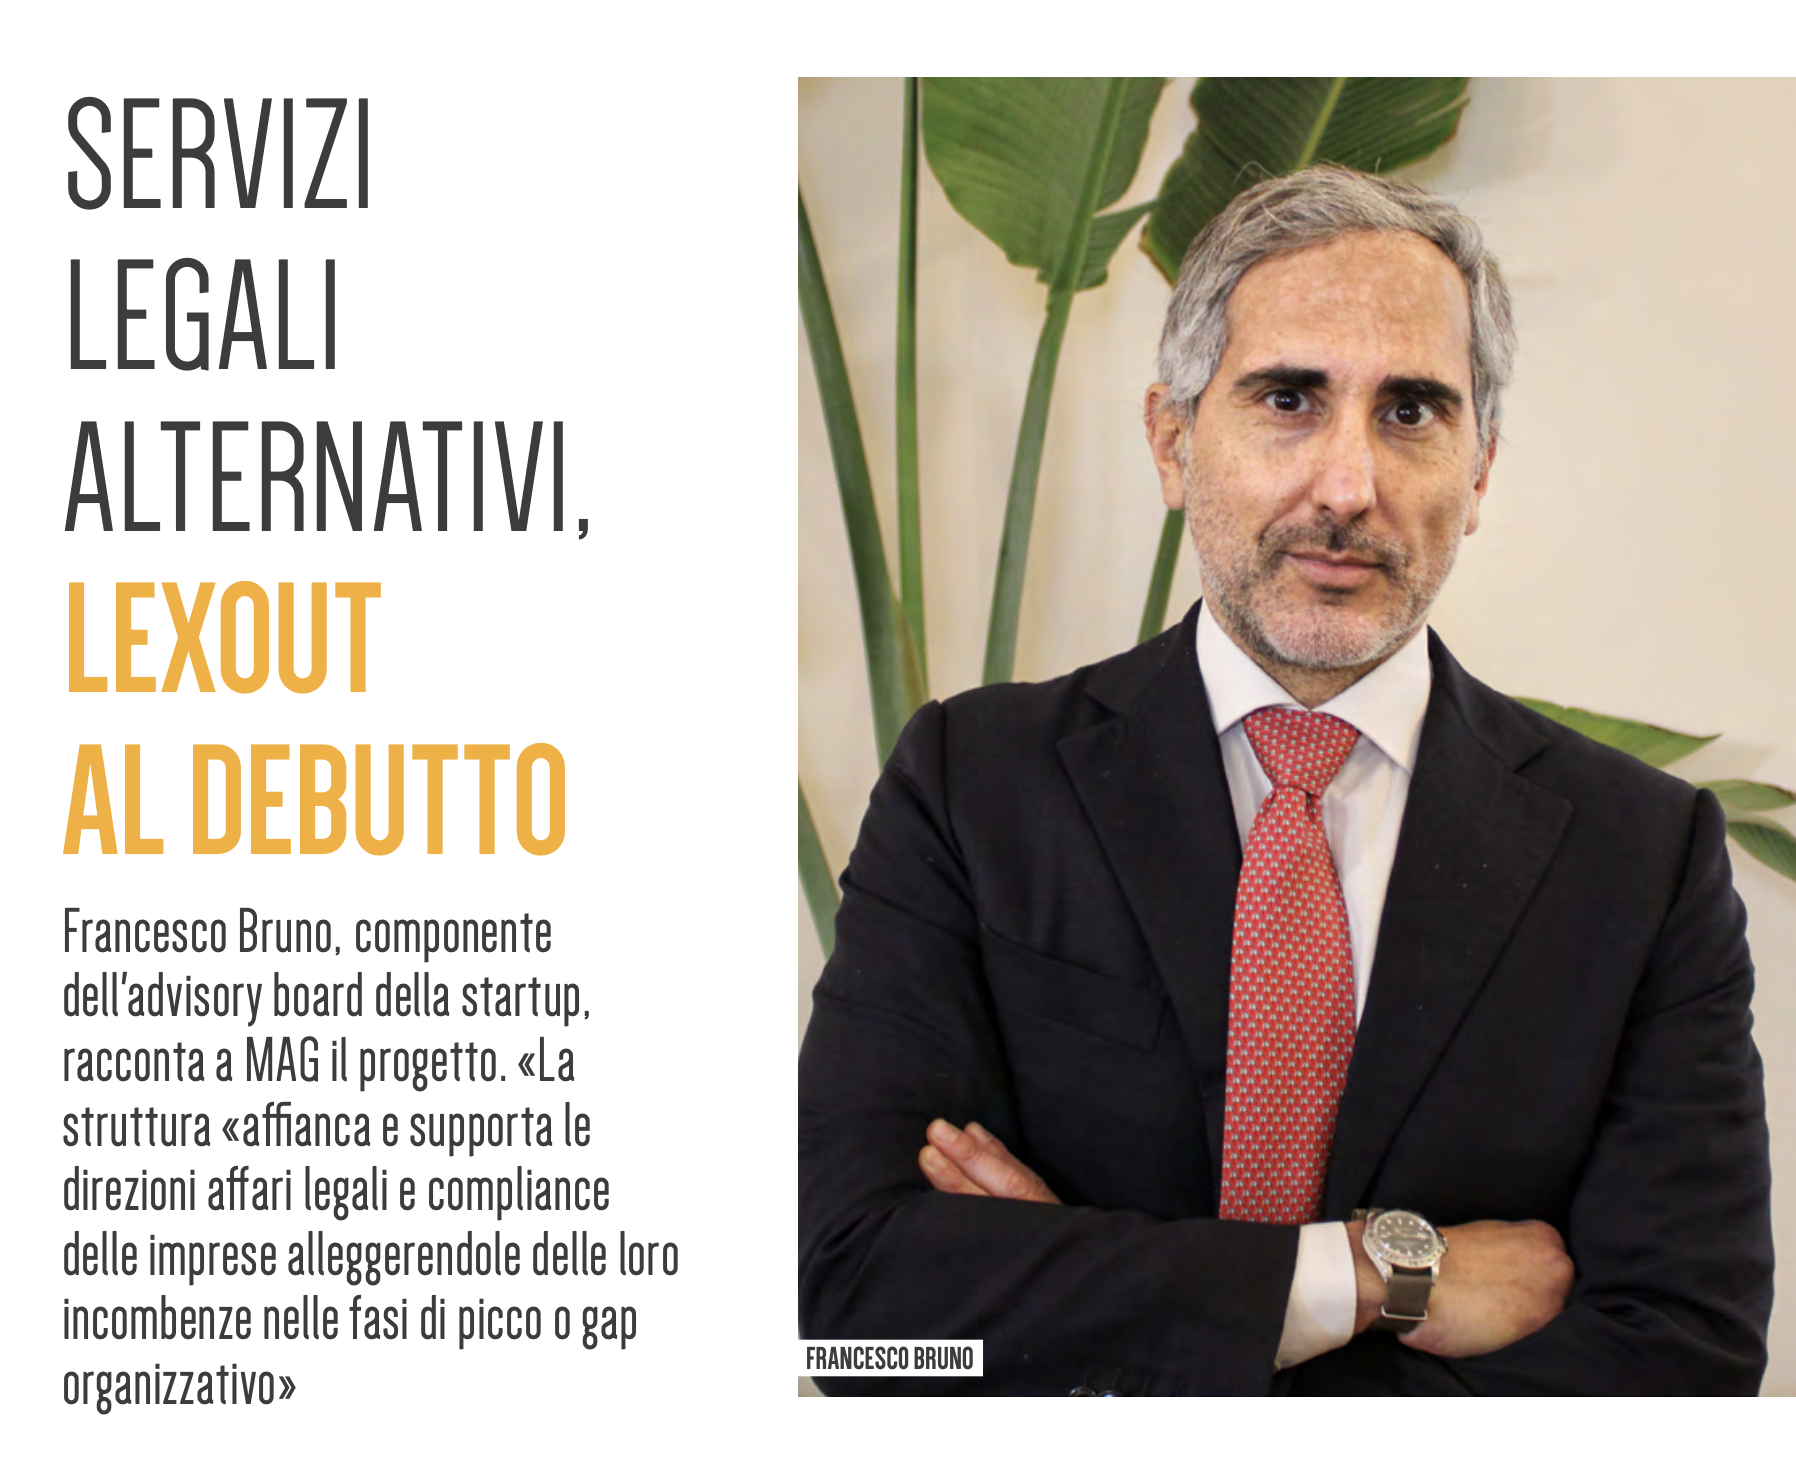 Lexout su «MAG», Francesco Bruno: «L’obbiettivo è supportare le imprese alleggerendole dalle incombenze»